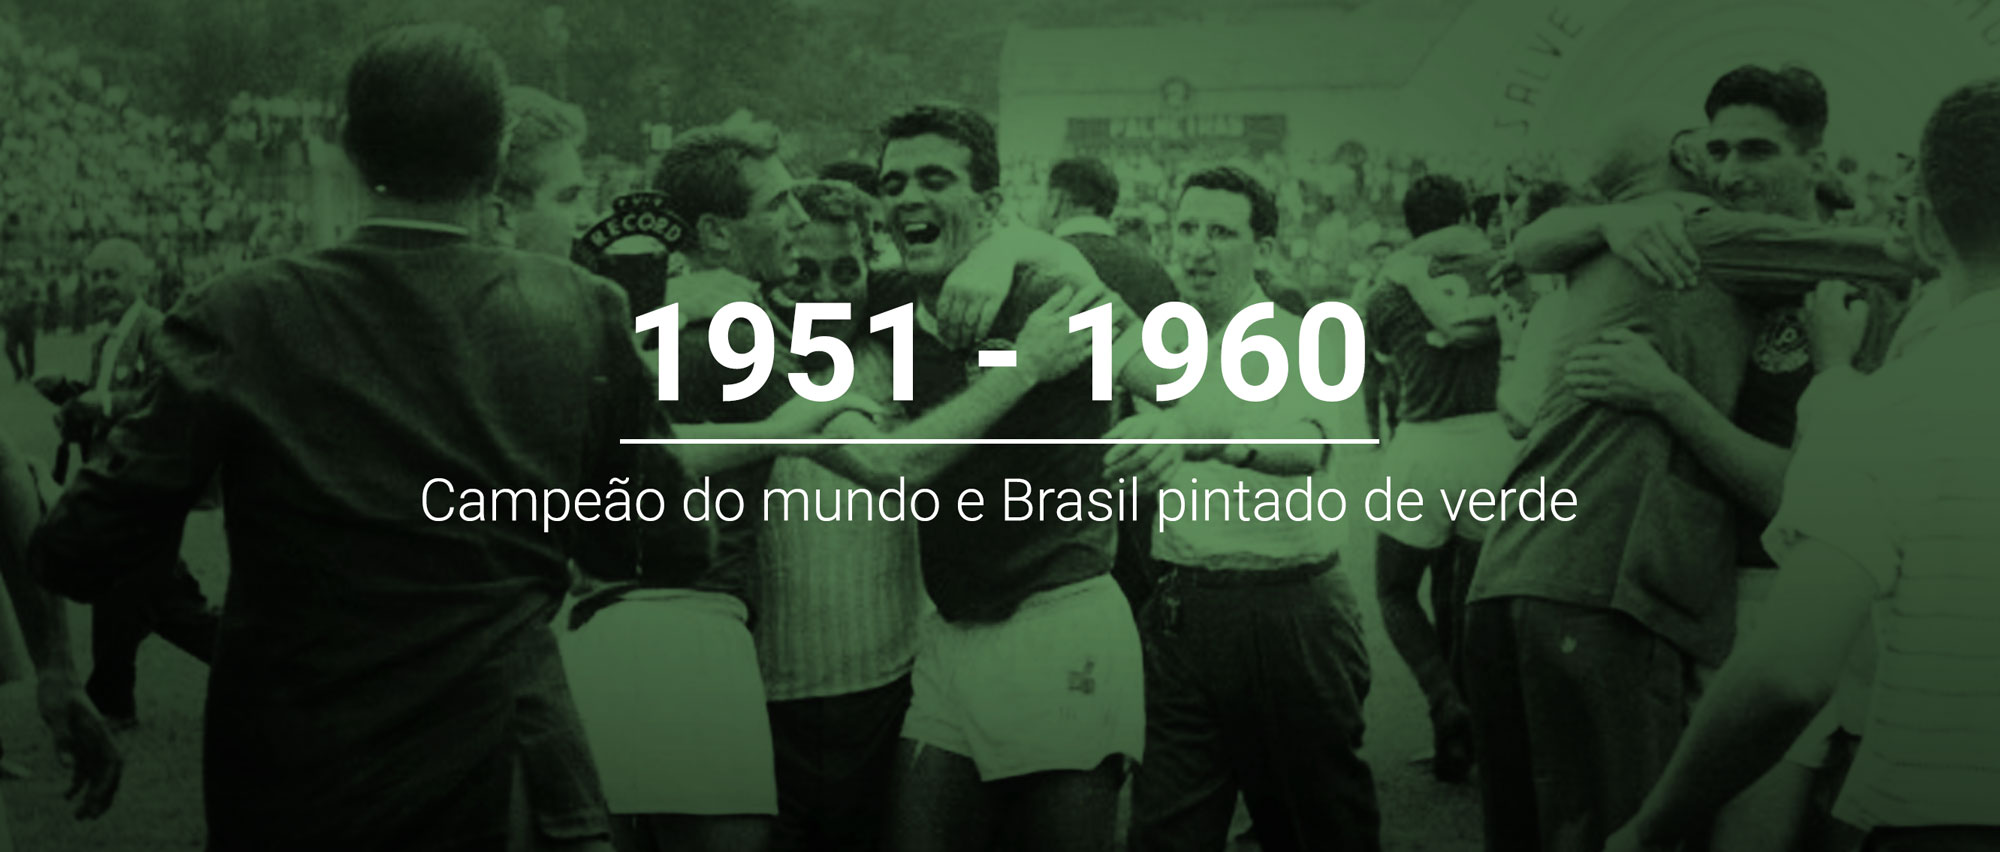 O Palmeiras é campeão mundial, sim! E o título da Taça Rio-1951